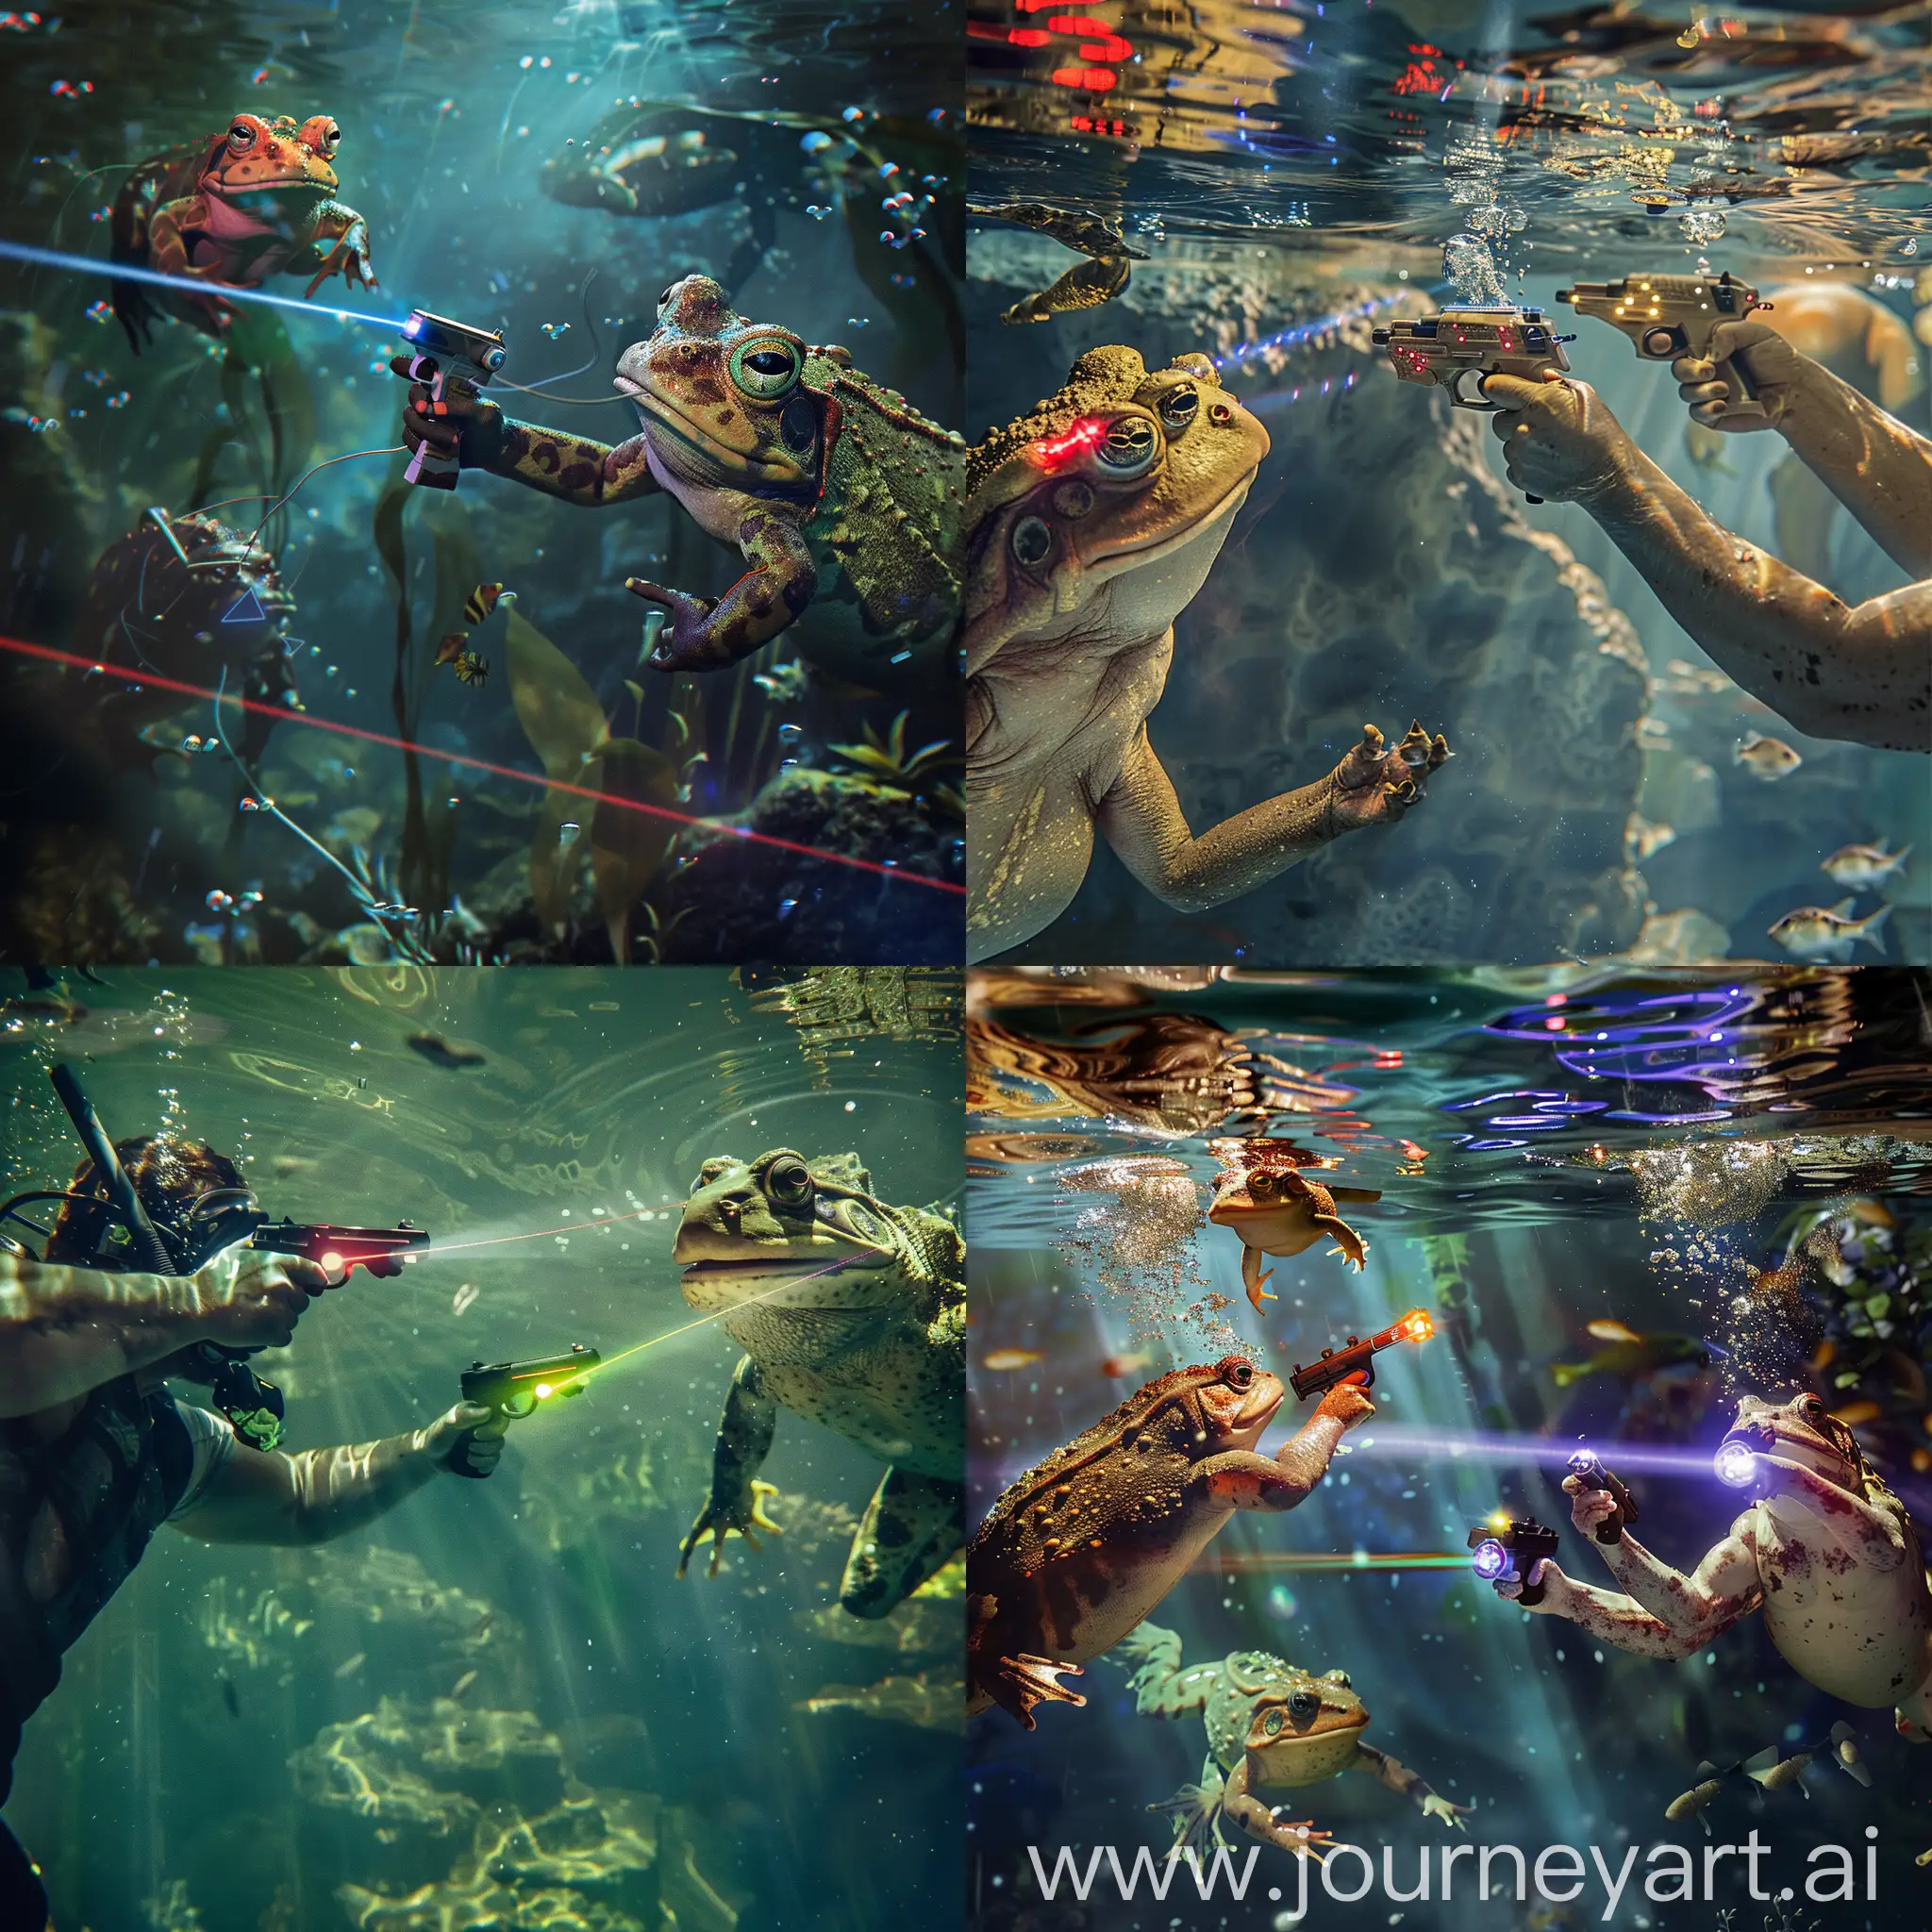 Подводные лазертаг - игра, в которой амфибии(гунганы) и люди могут сражаться друг с другом, используя специальные лазерные пистолеты под водой